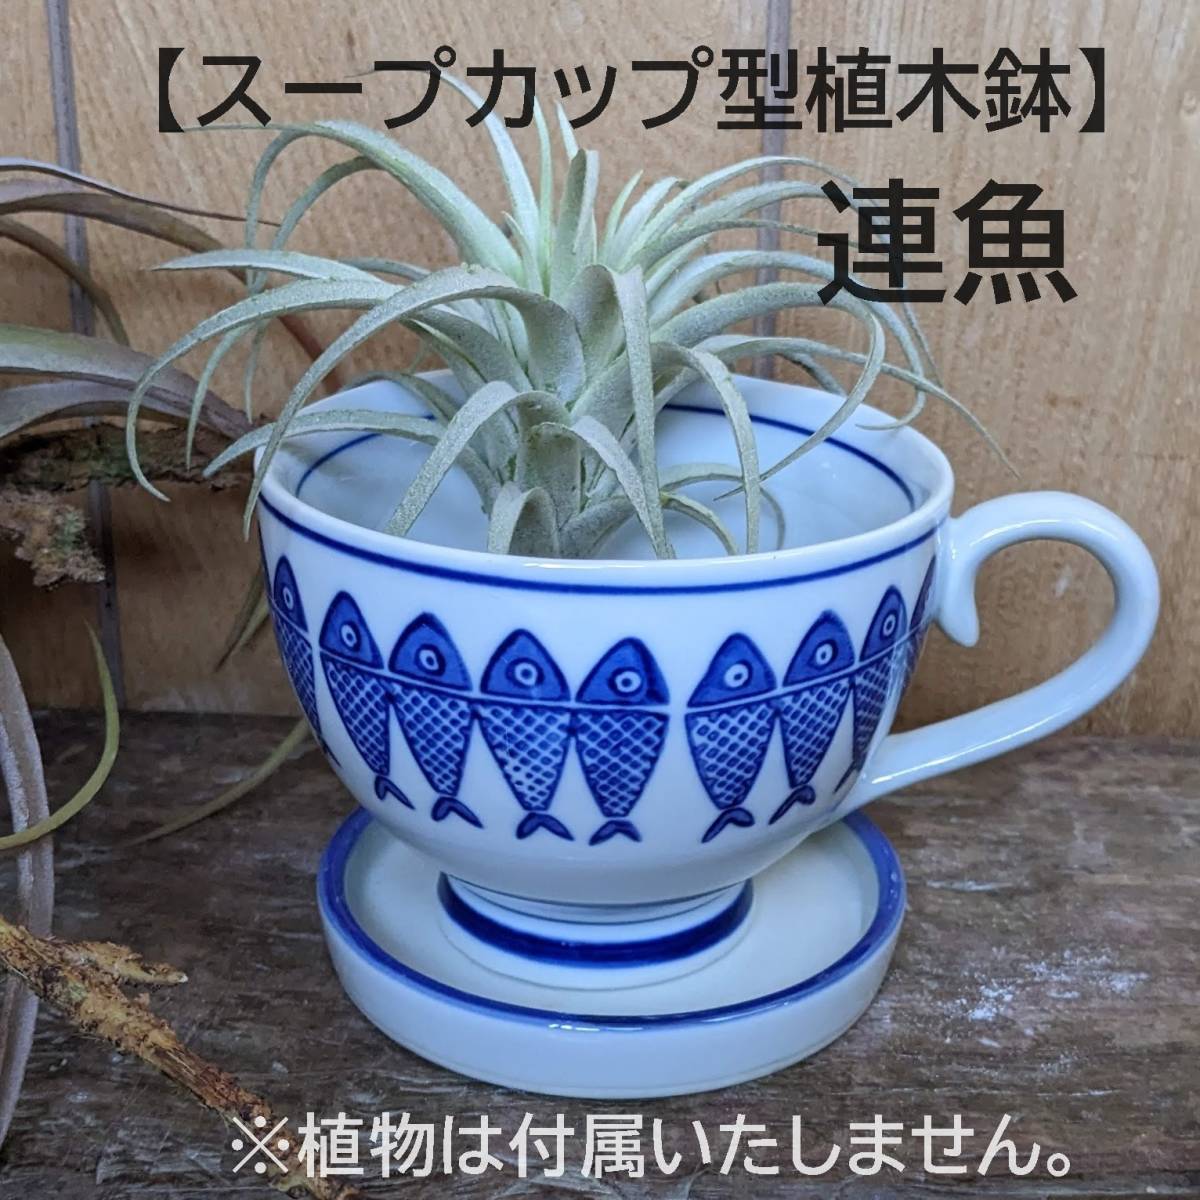 [ полосный рыба рисунок ] суповая чашка type цветочный горшок поддонник есть .... суккулентное растение мох кактус цветочный горшок керамика японский стиль белый фарфор с синим рисунком декоративное растение 